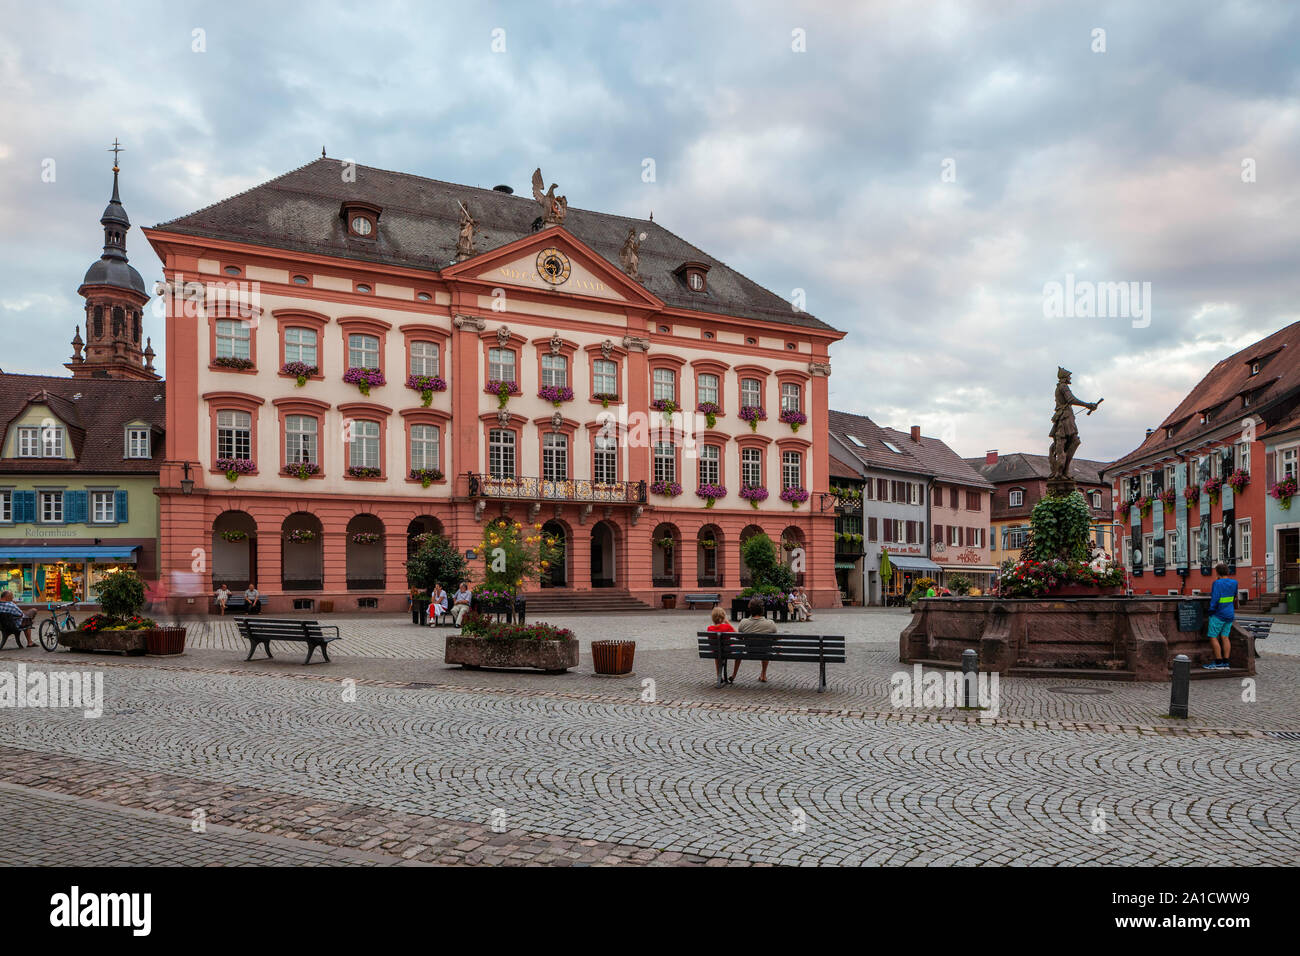 Hôtel de ville, quartier historique, Gengenbach, Allemagne Banque D'Images